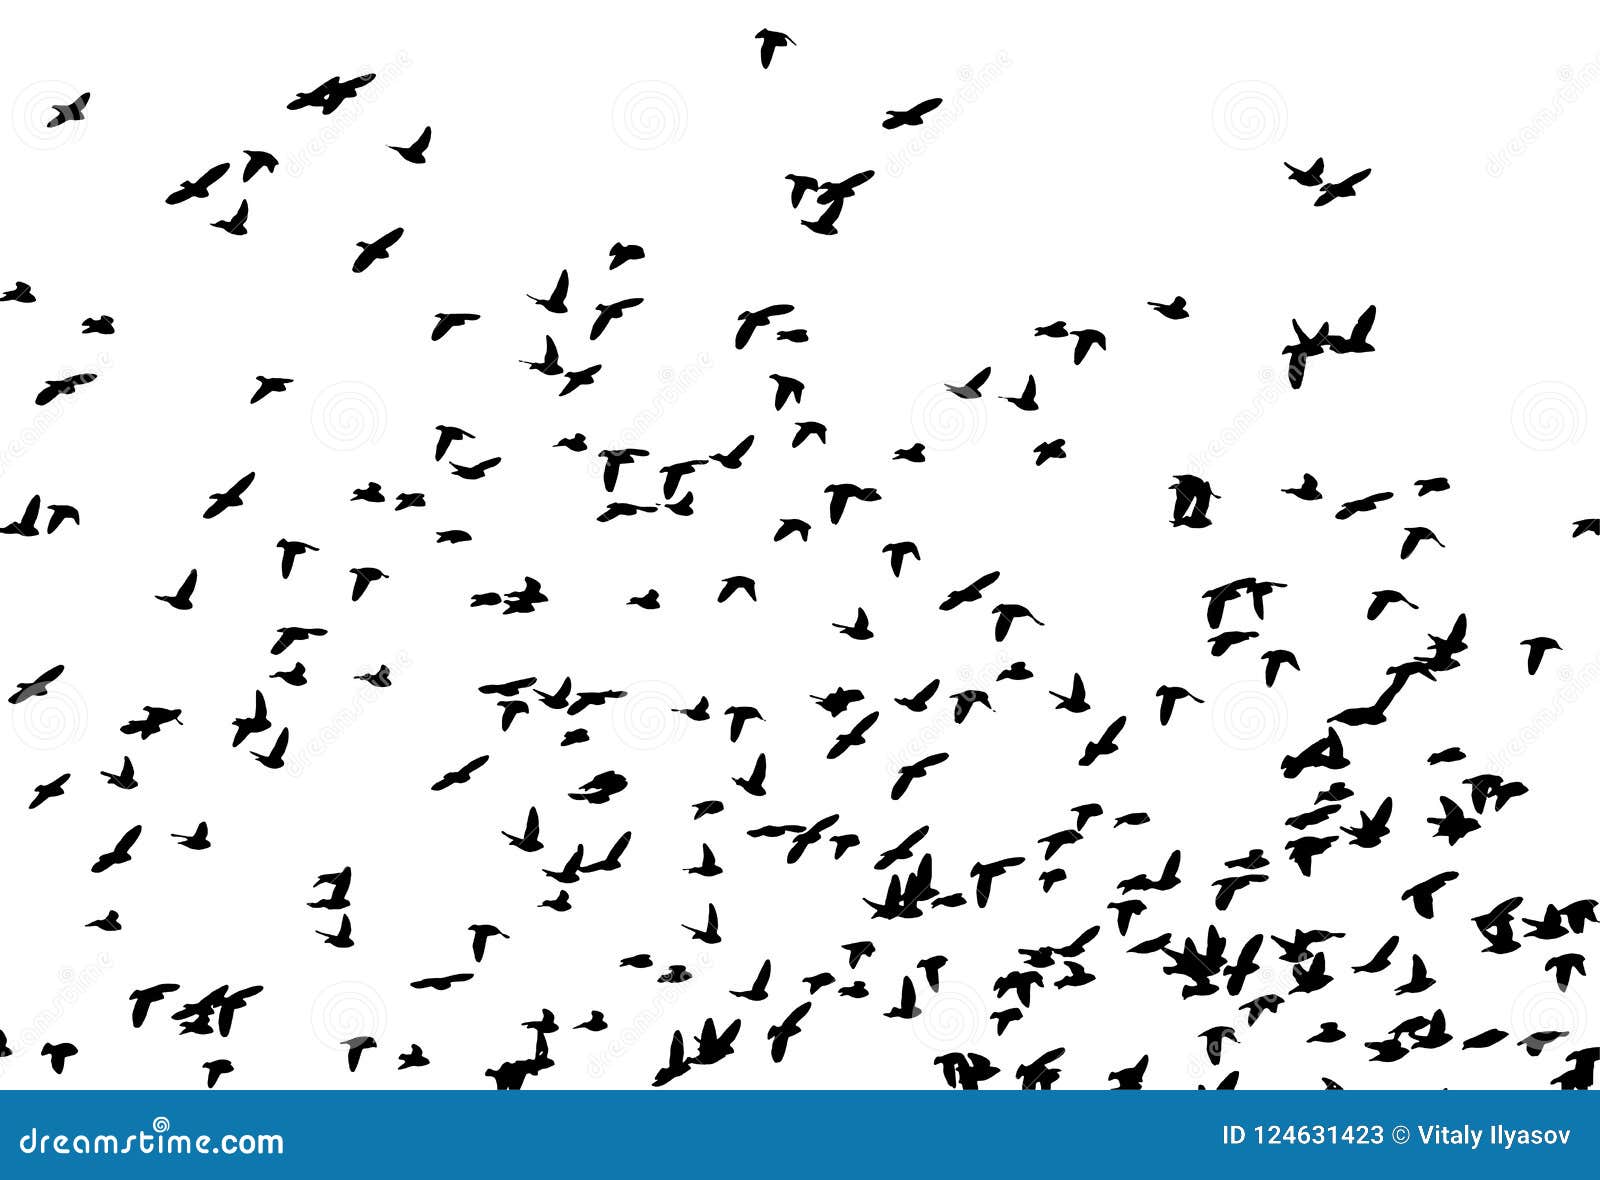 bohemian waxwing in flight.  silhouette a flock of birds